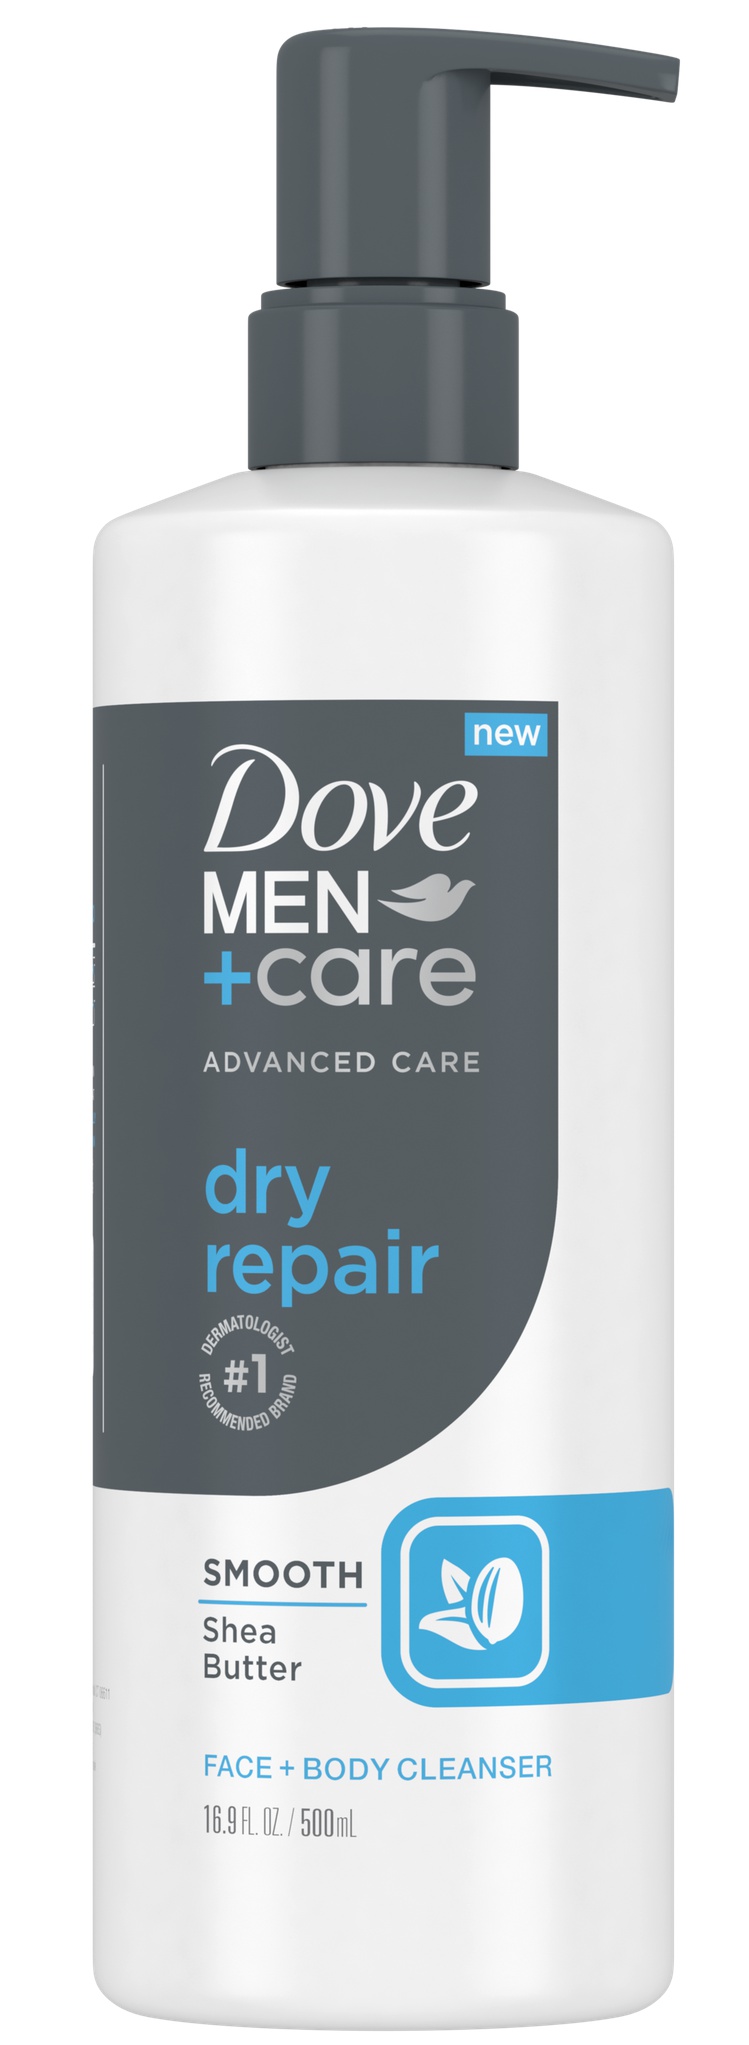 Dove Men+Care Advanced Care Dry Repair Face + Body Wash